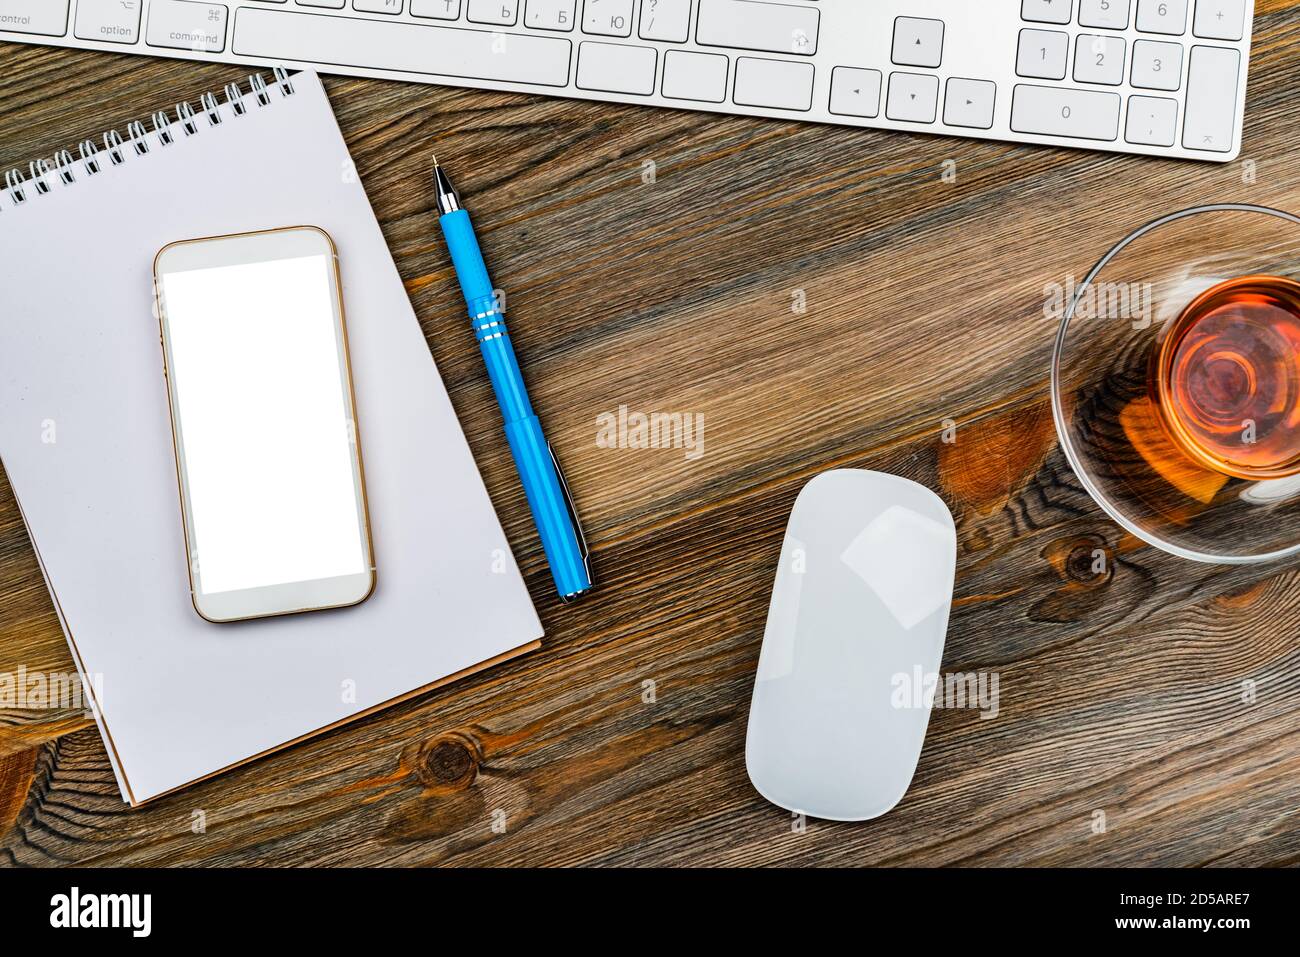 table de bureau avec clavier d'ordinateur, souris, tasse de thé et smartphone Banque D'Images